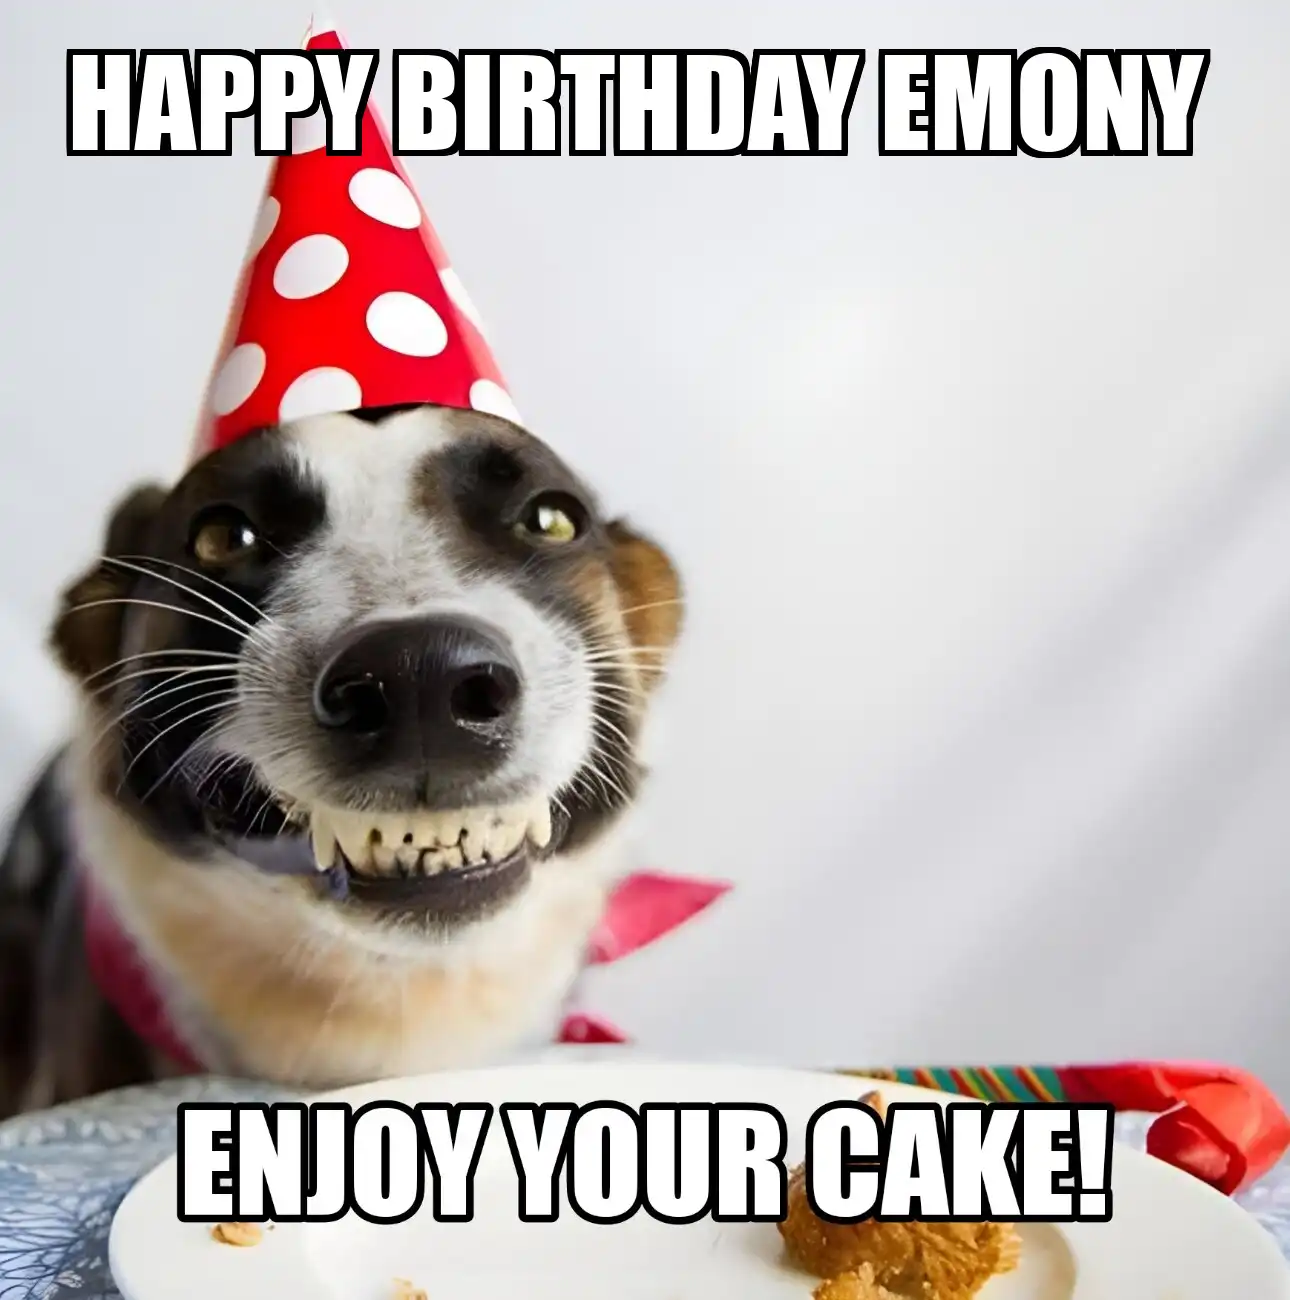 Happy Birthday Emony Enjoy Your Cake Dog Meme